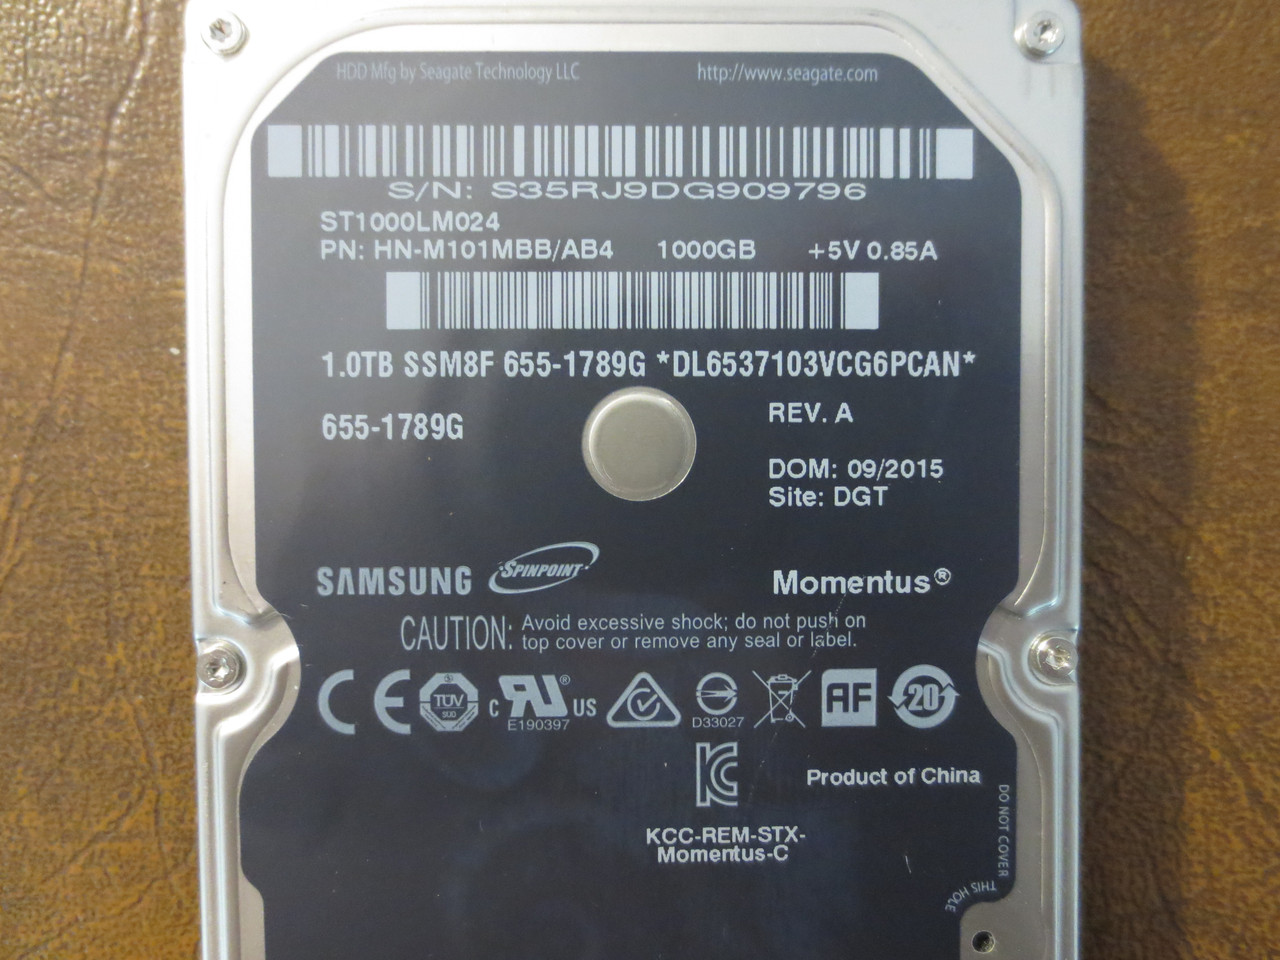 Samsung ST1000LM024 HN-M101MBB/AB4 REV.A DGT Apple#655-1789G 1.0TB Sata -  Effective Electronics